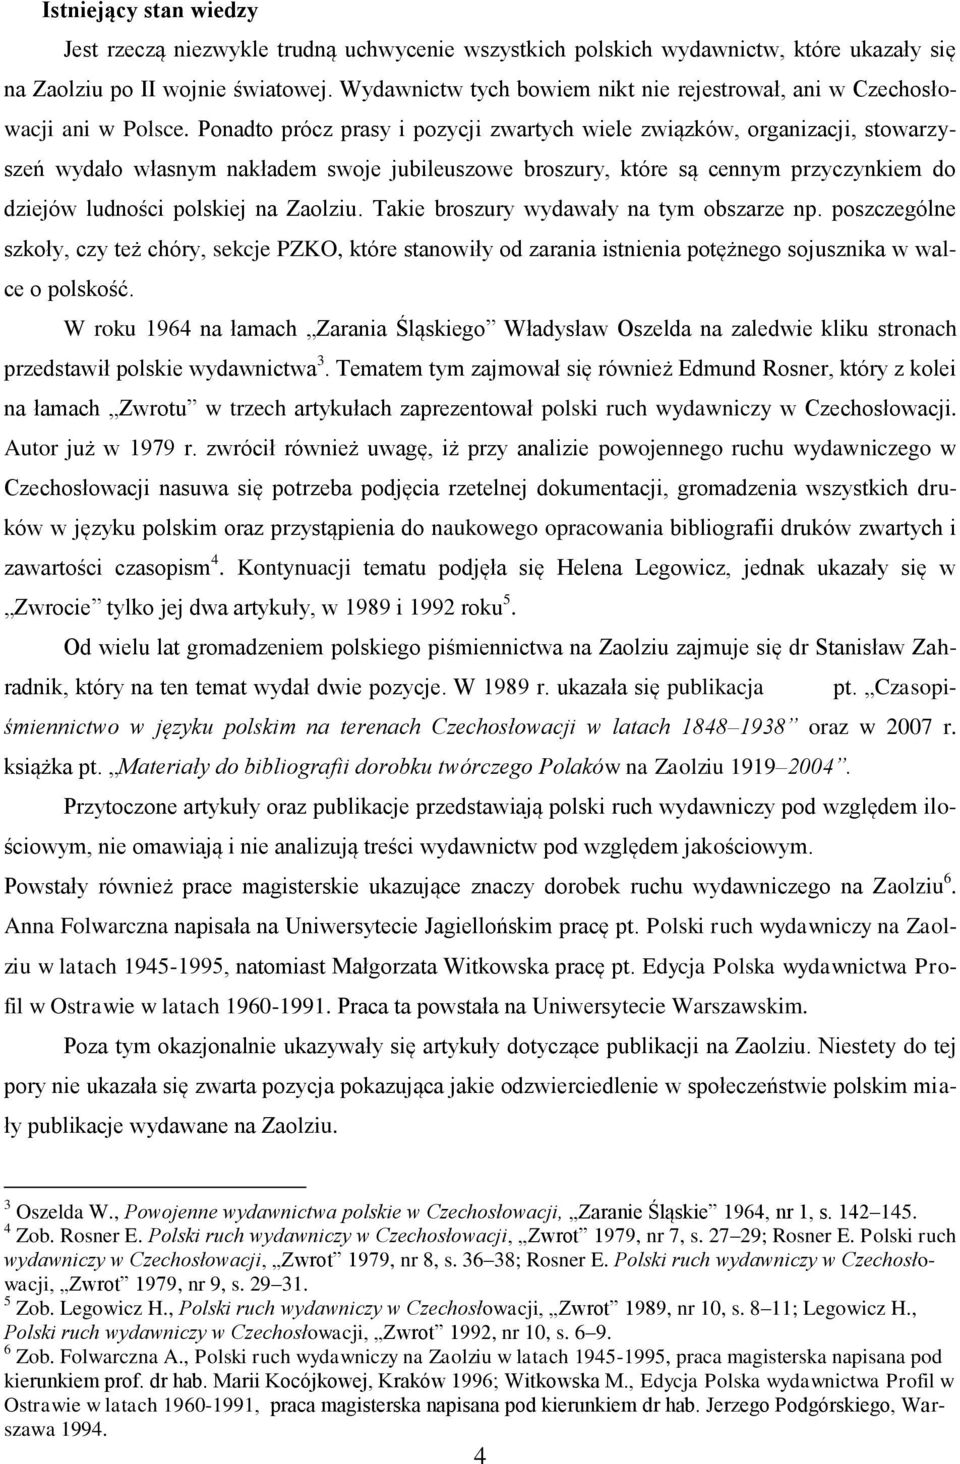 Ponadto prócz prasy i pozycji zwartych wiele związków, organizacji, stowarzyszeń wydało własnym nakładem swoje jubileuszowe broszury, które są cennym przyczynkiem do dziejów ludności polskiej na